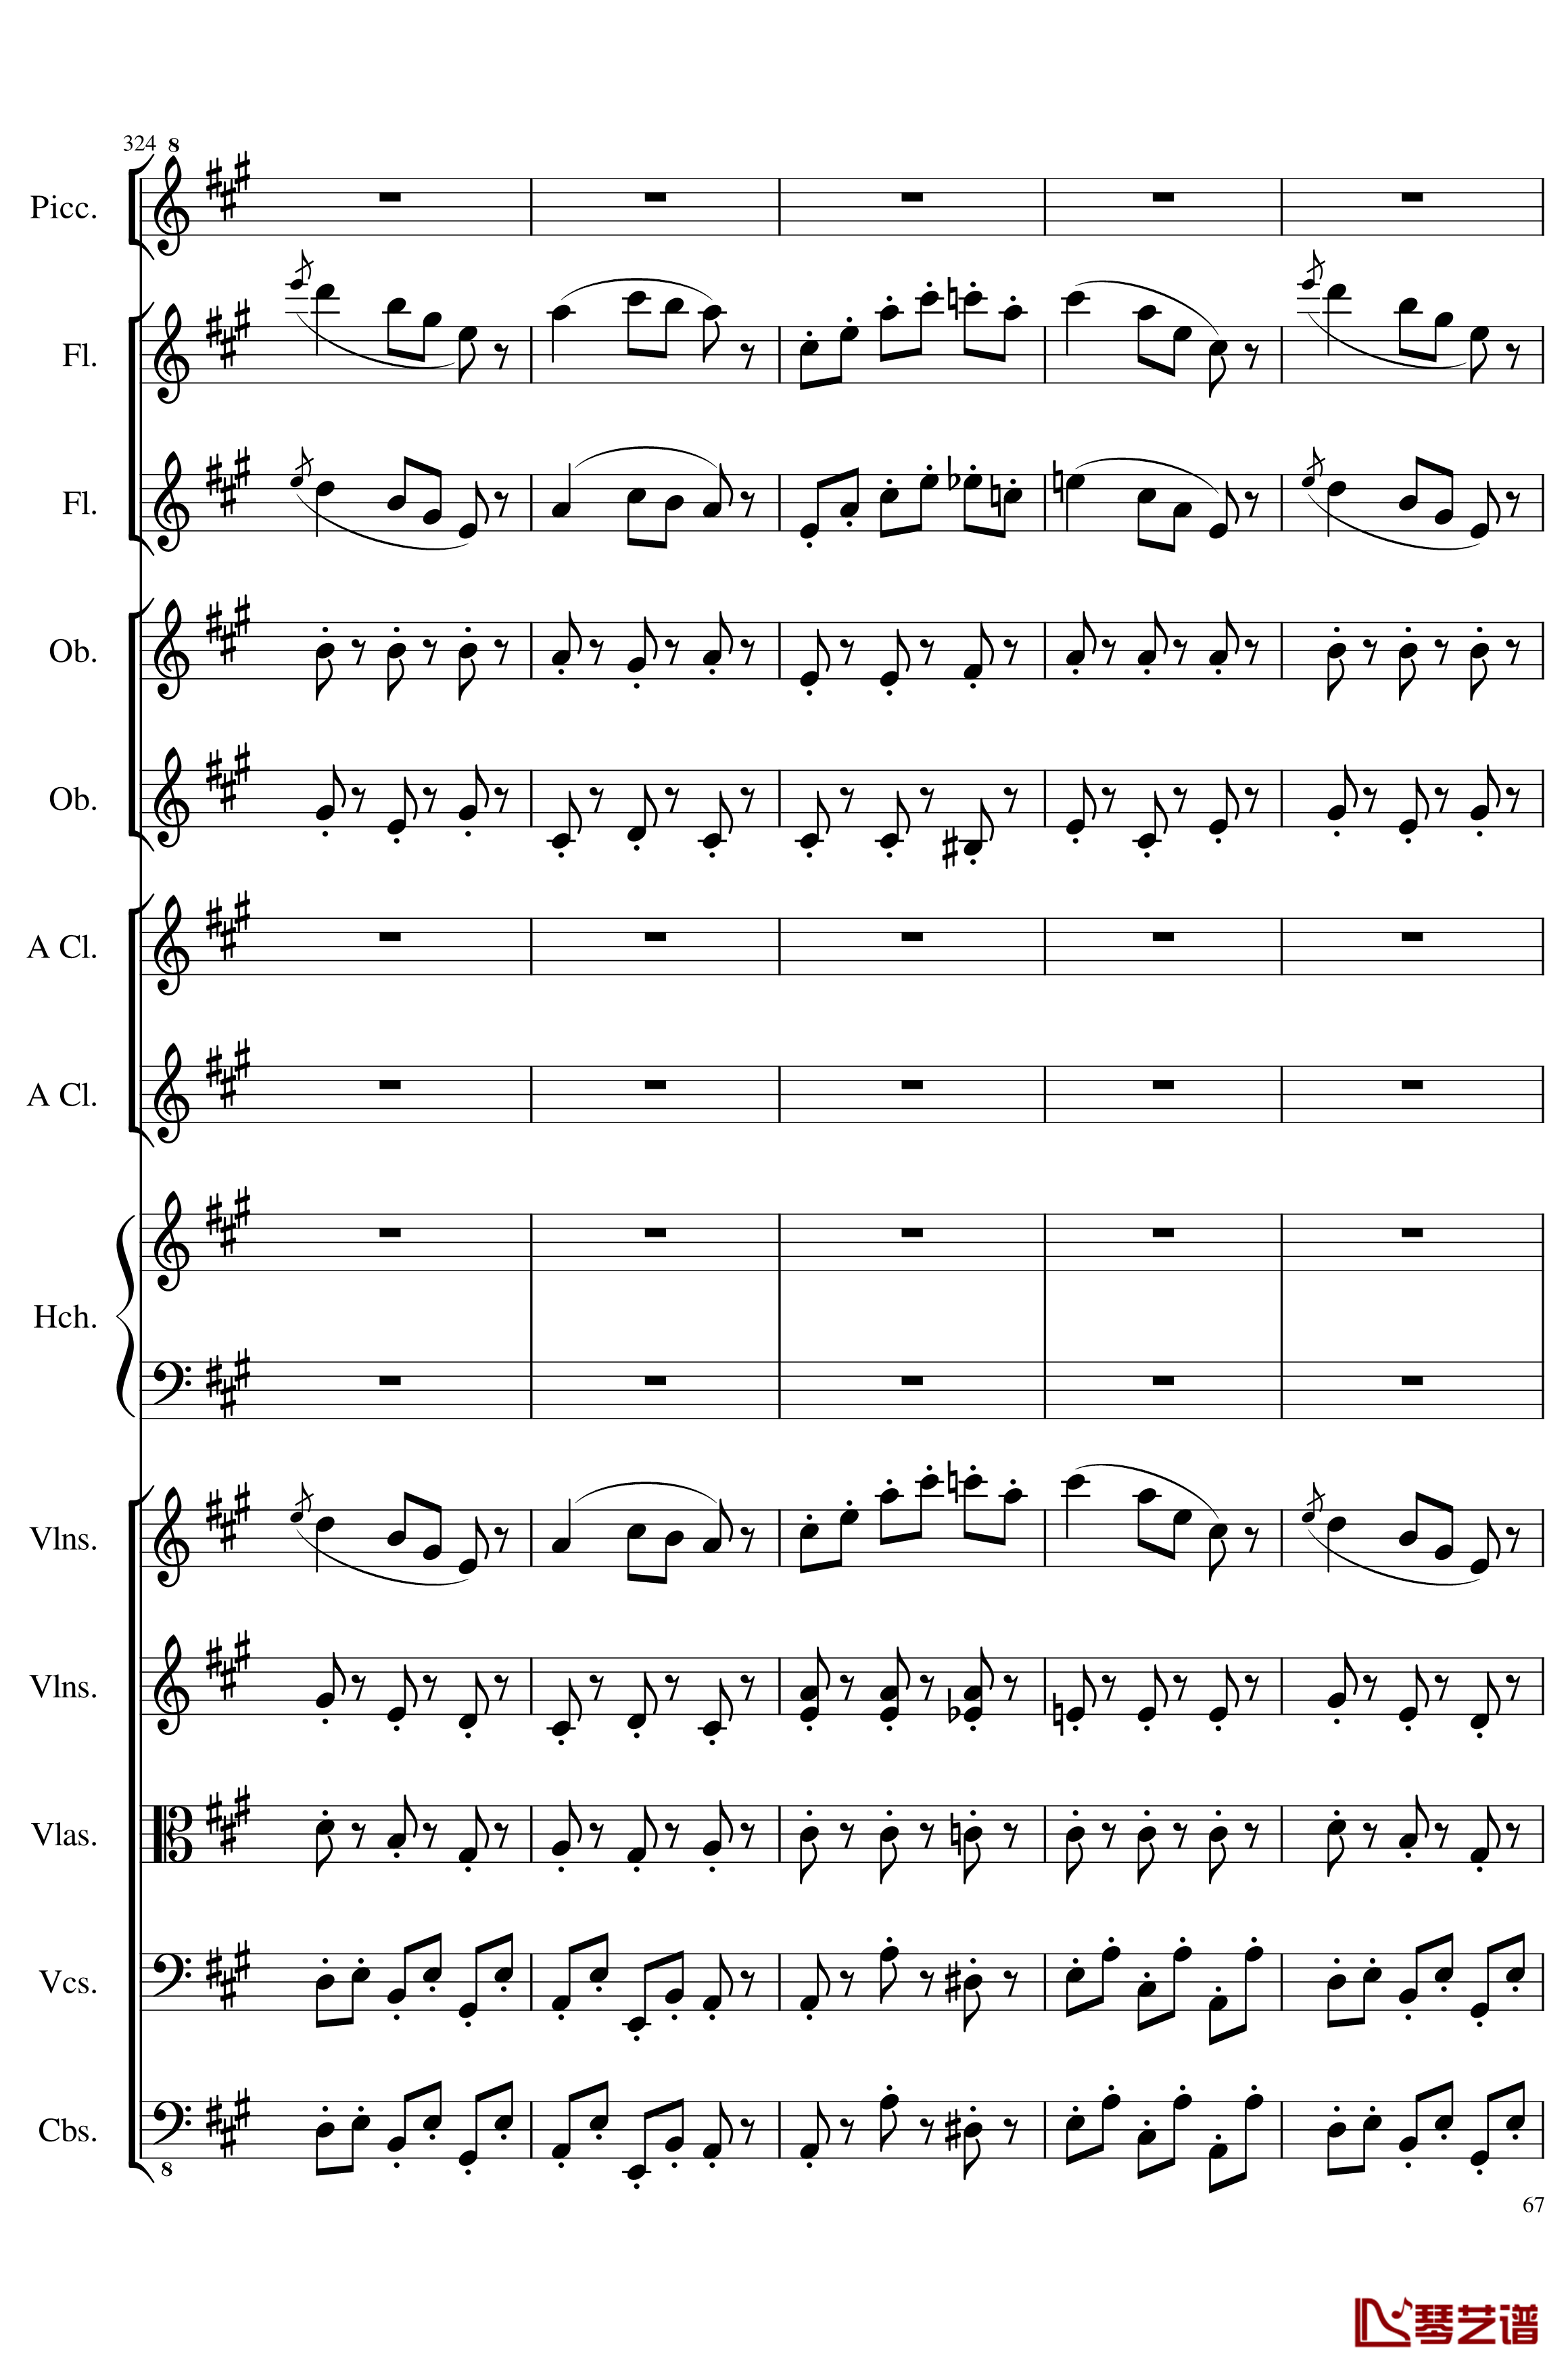 7 Contredanses No.1-7, Op.124钢琴谱-7首乡村舞曲，第一至第七，作品124-一个球67